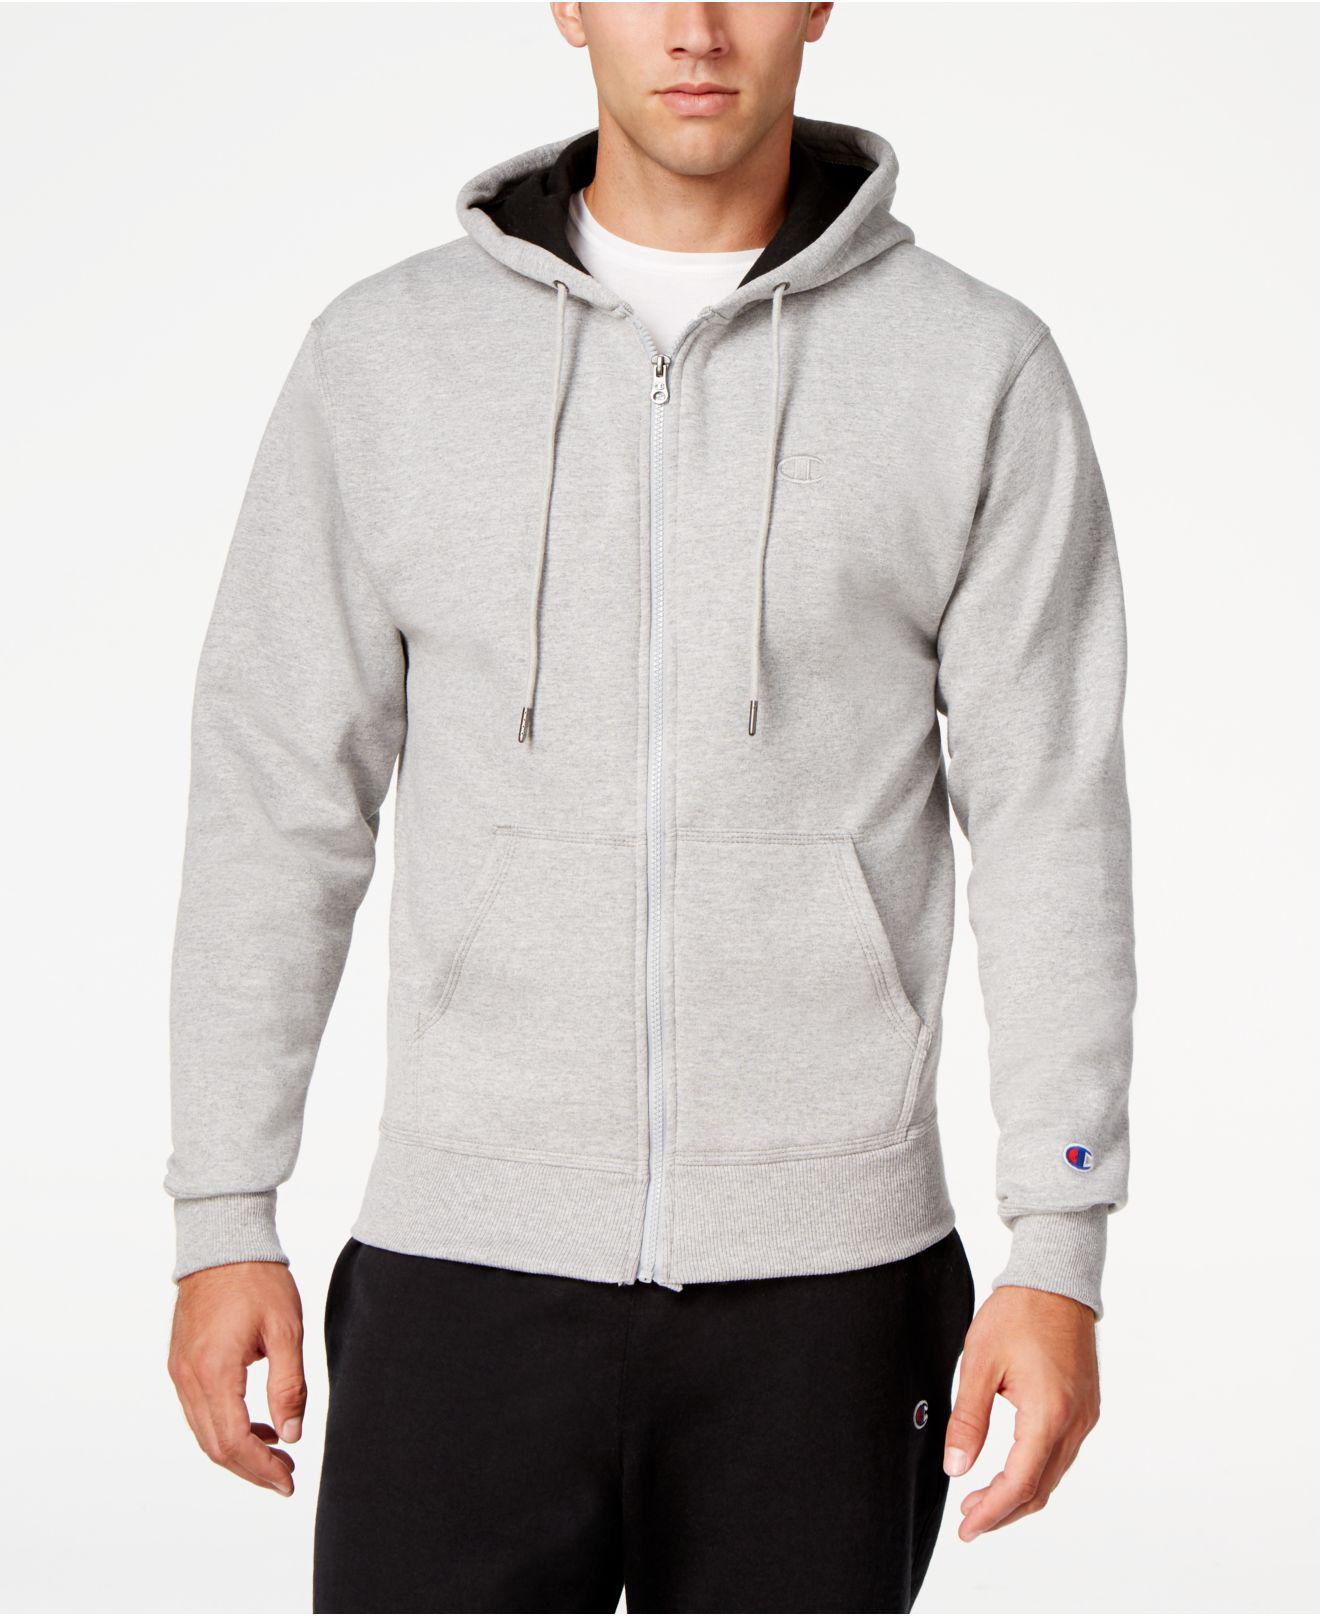 champion men's zip hoodie